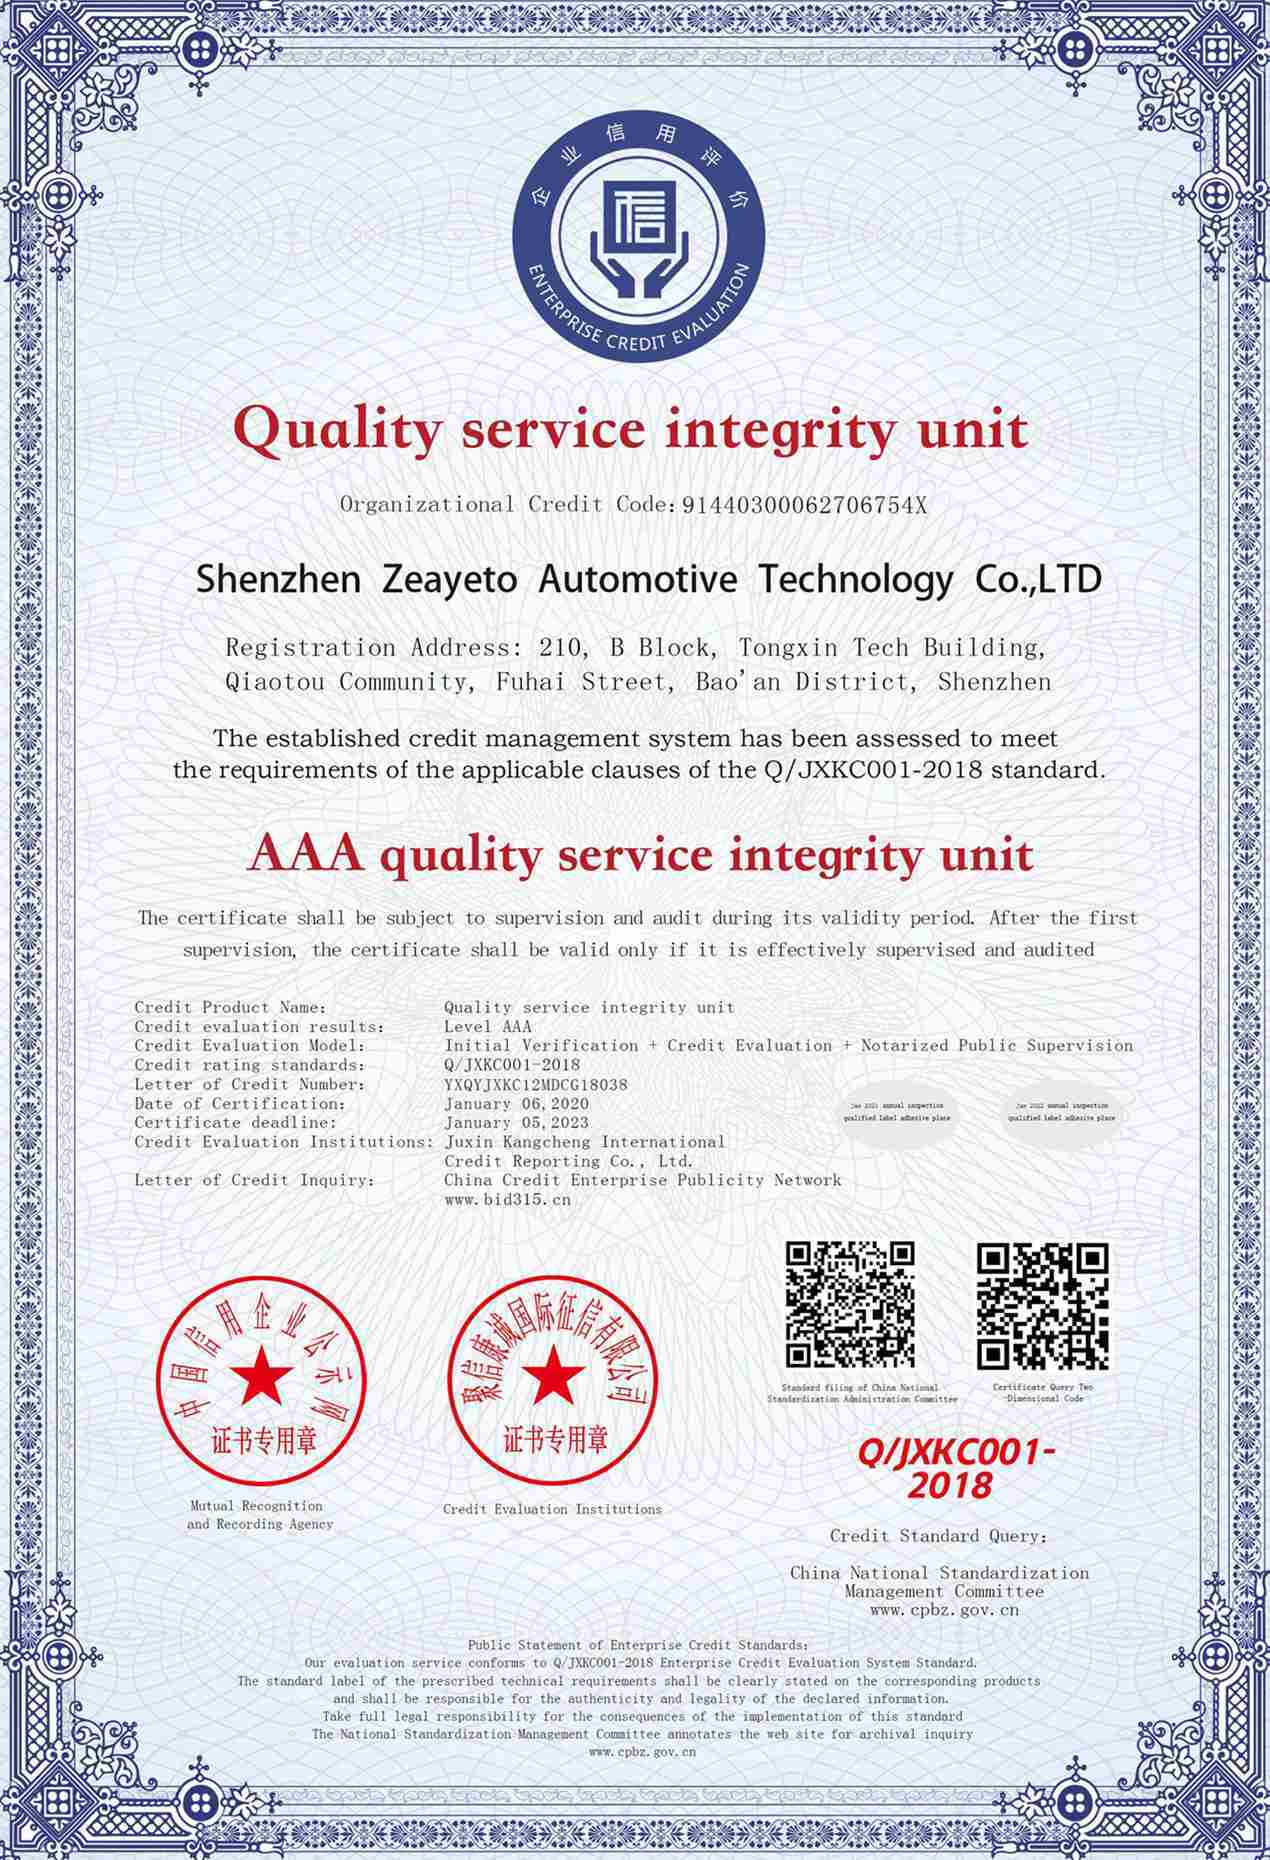 Отдел качества обслуживания AAA